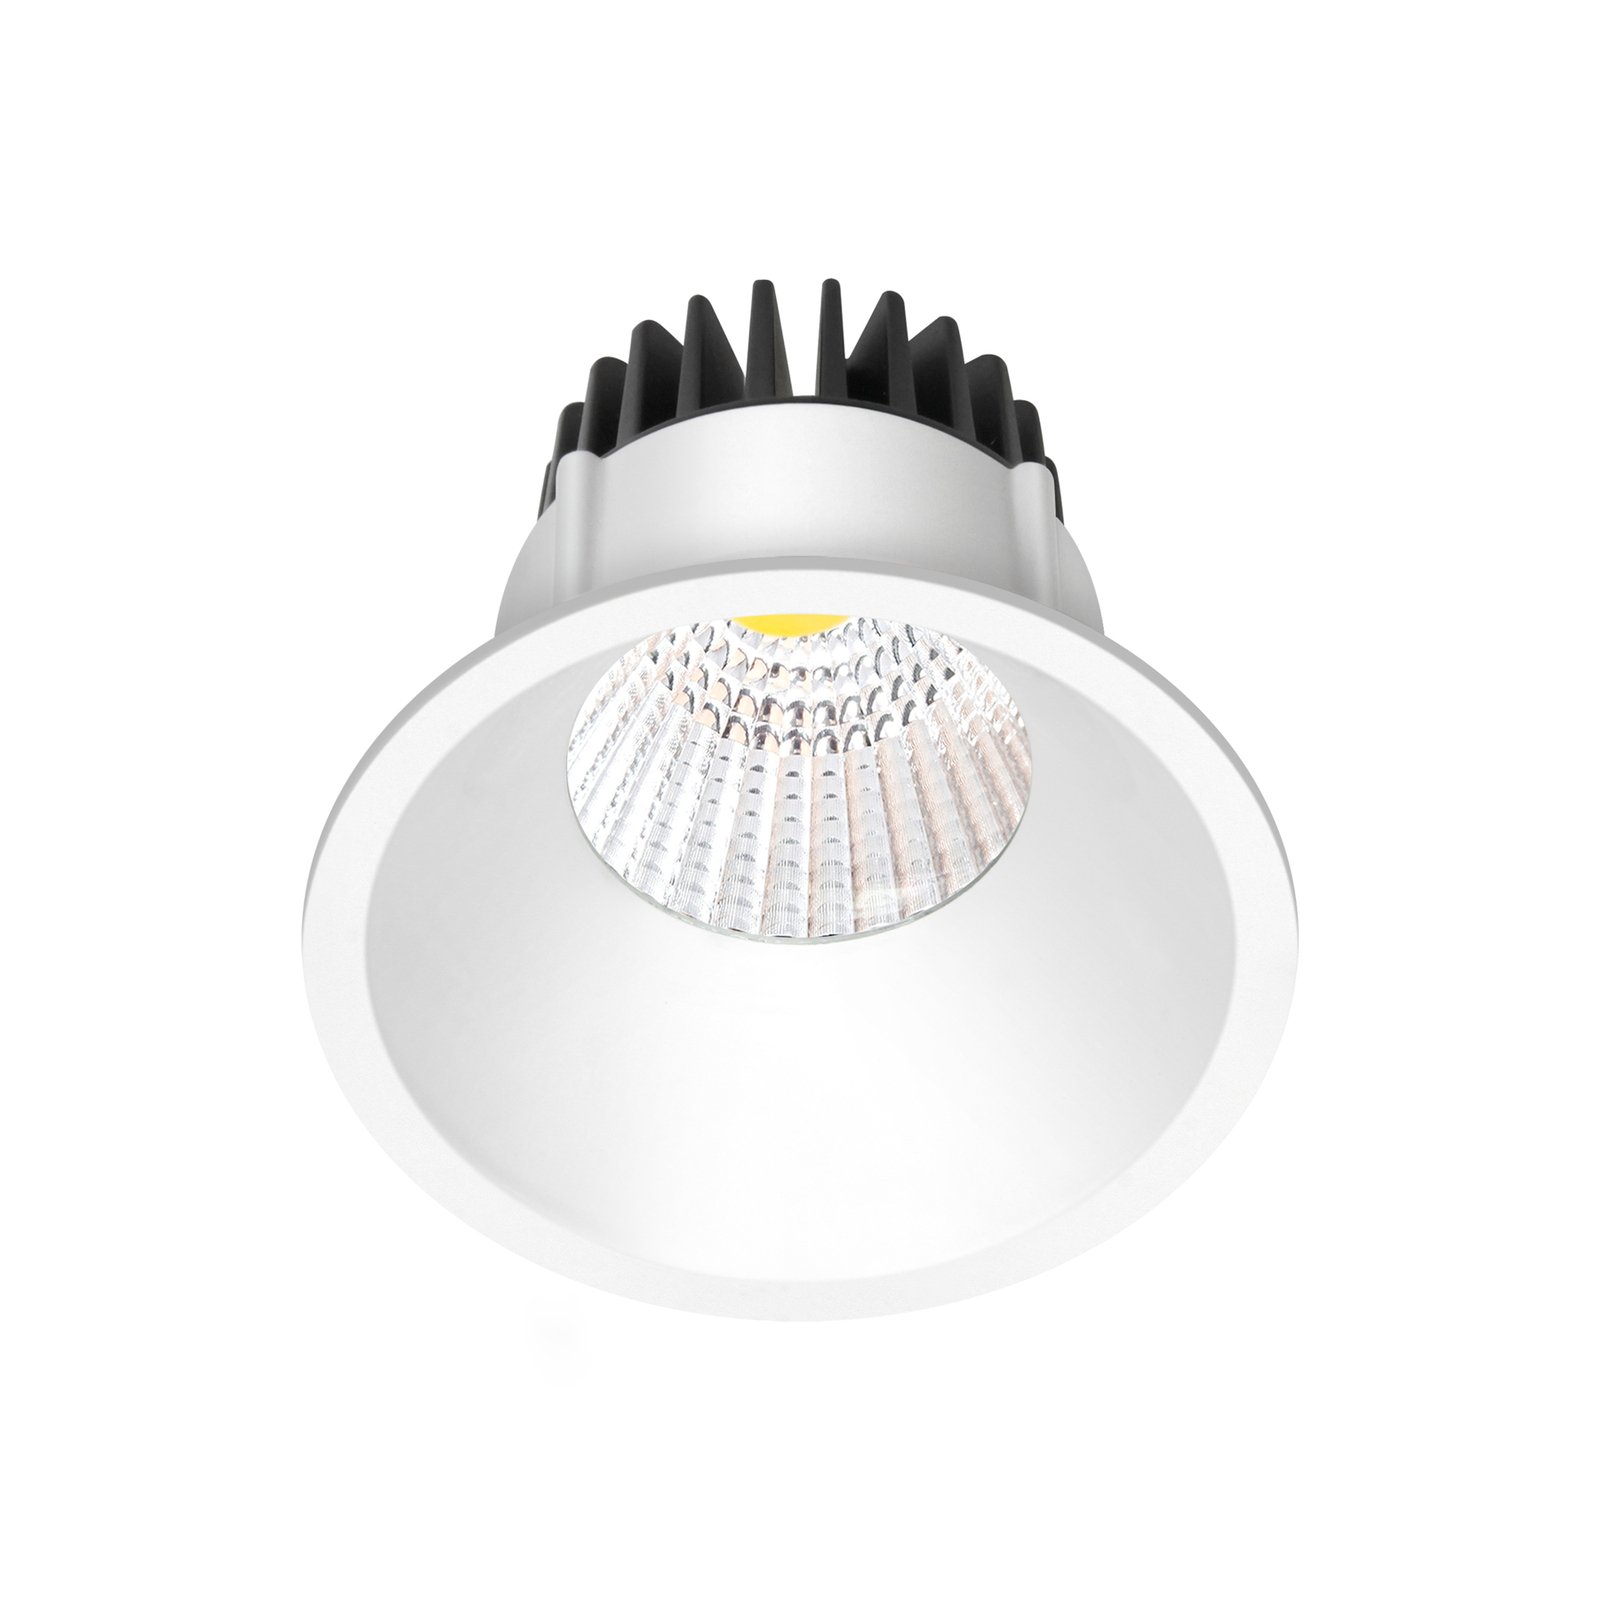 Arcchio LED downlight Niria white, 3,000K